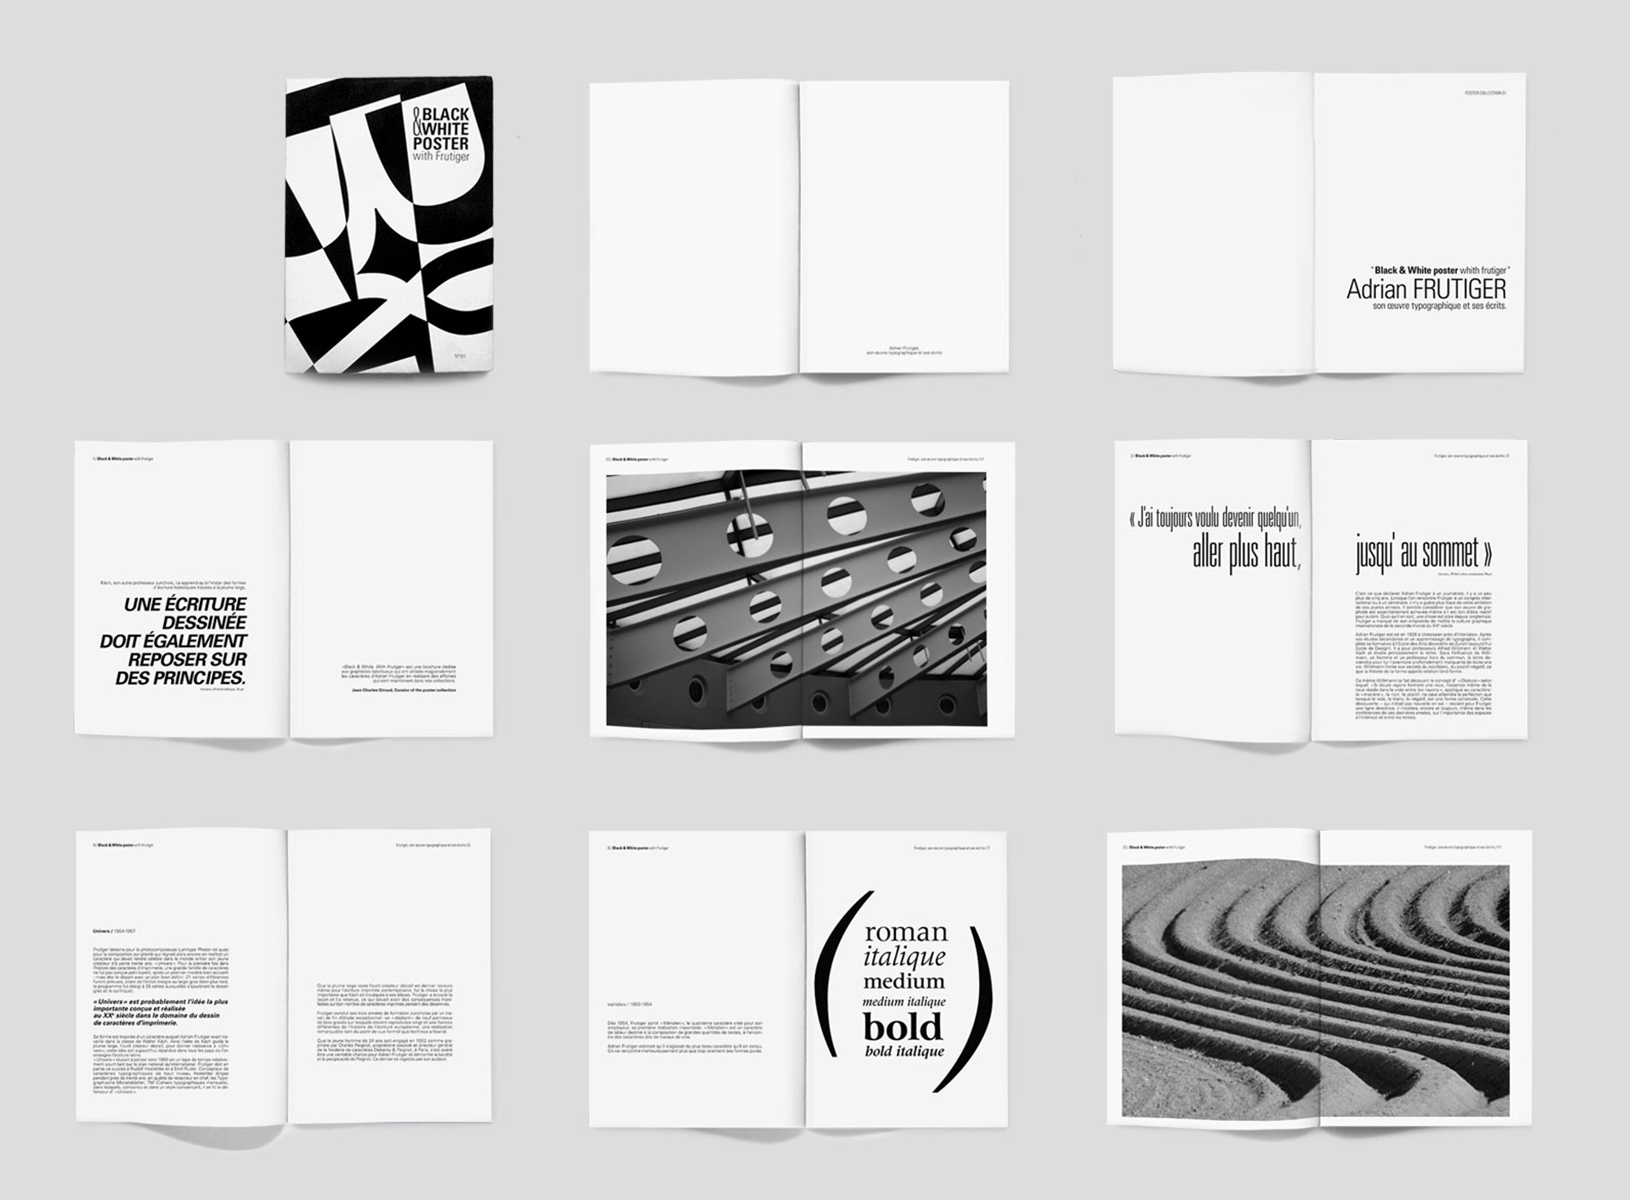 ouvrage, livre typographique sur frutiger, typographie. editorial design et graphic design création chloé genet, chloegenet.ch